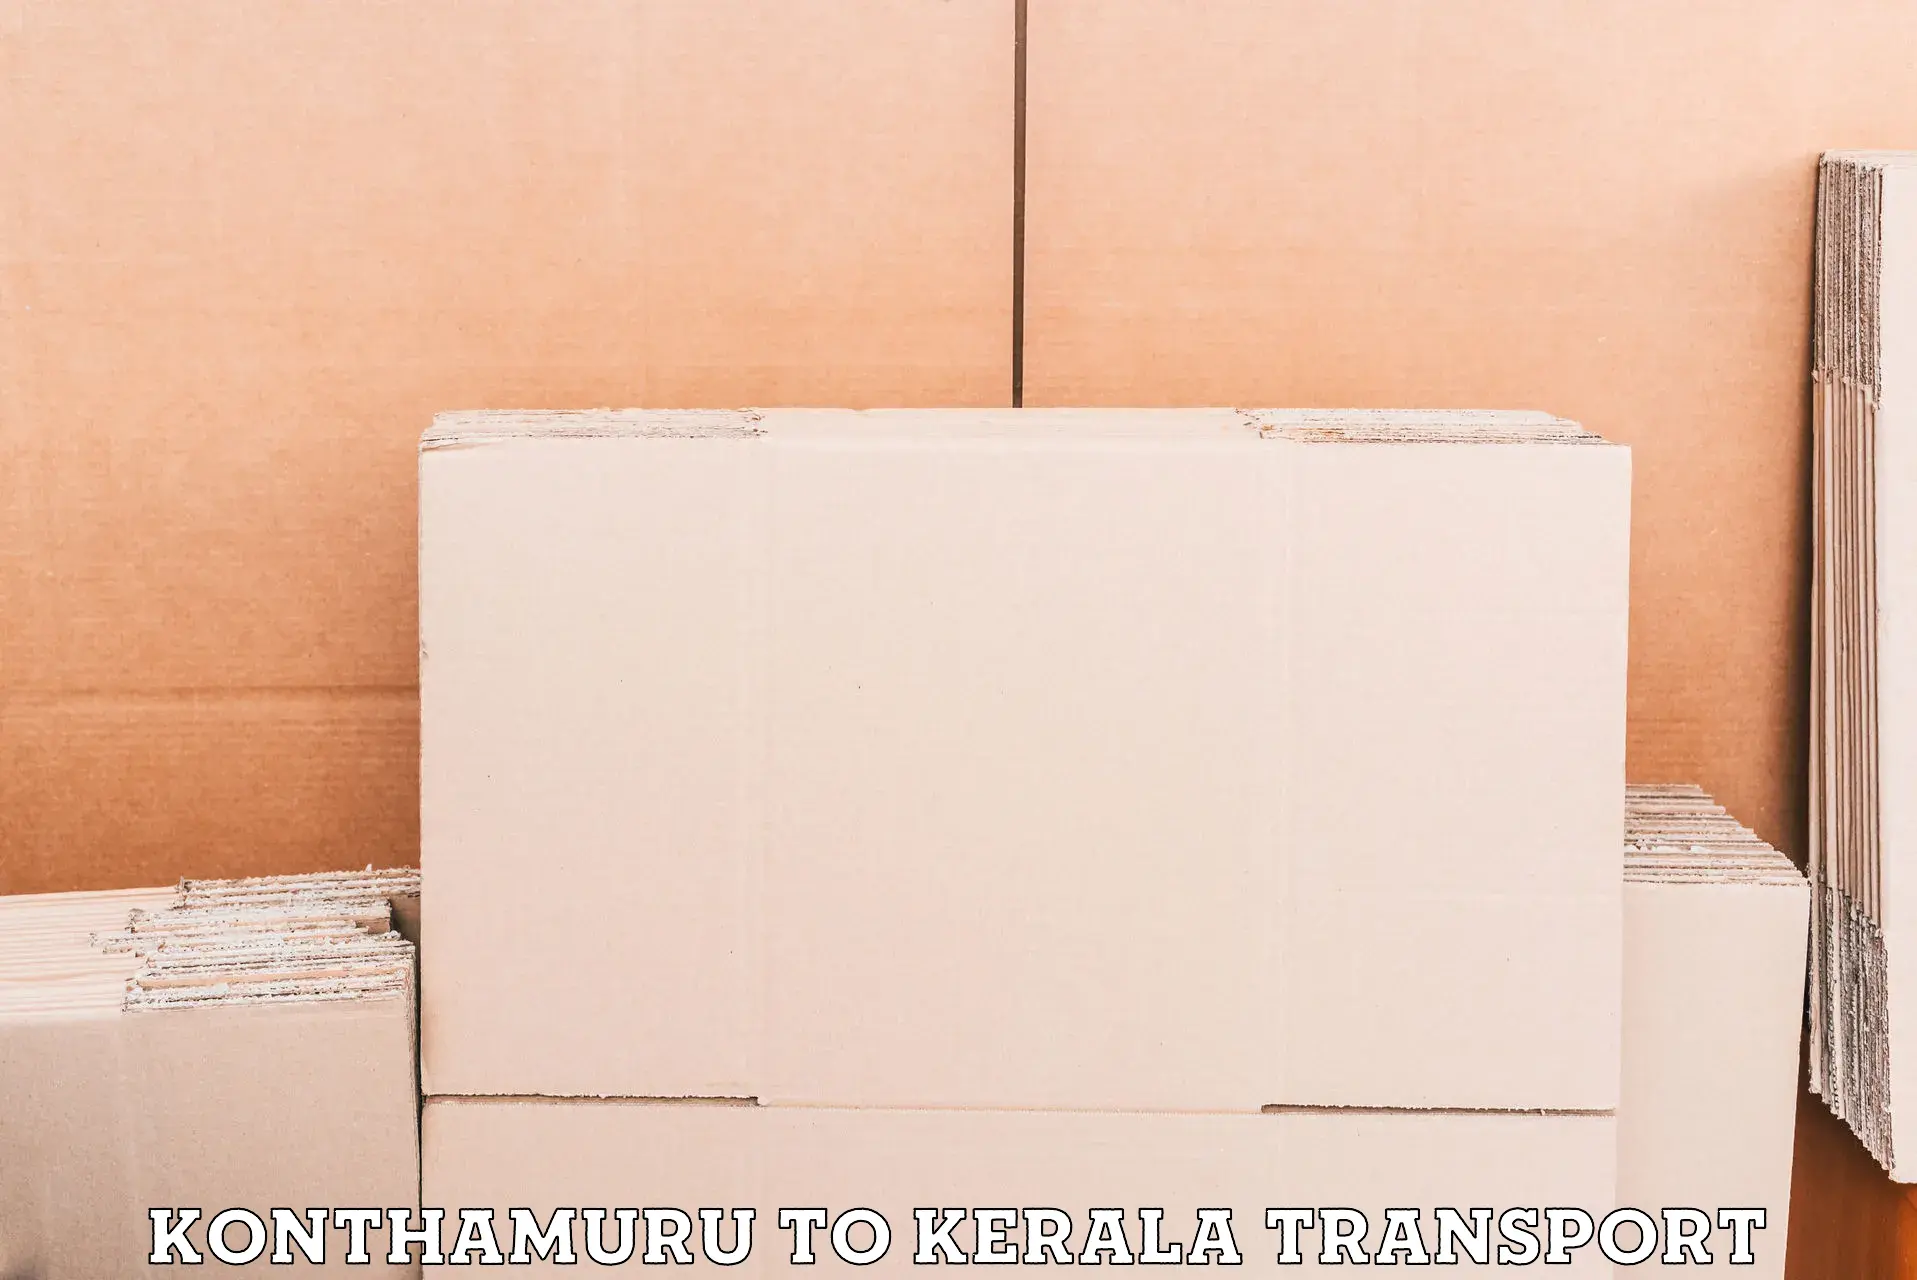 Air freight transport services in Konthamuru to Kayamkulam